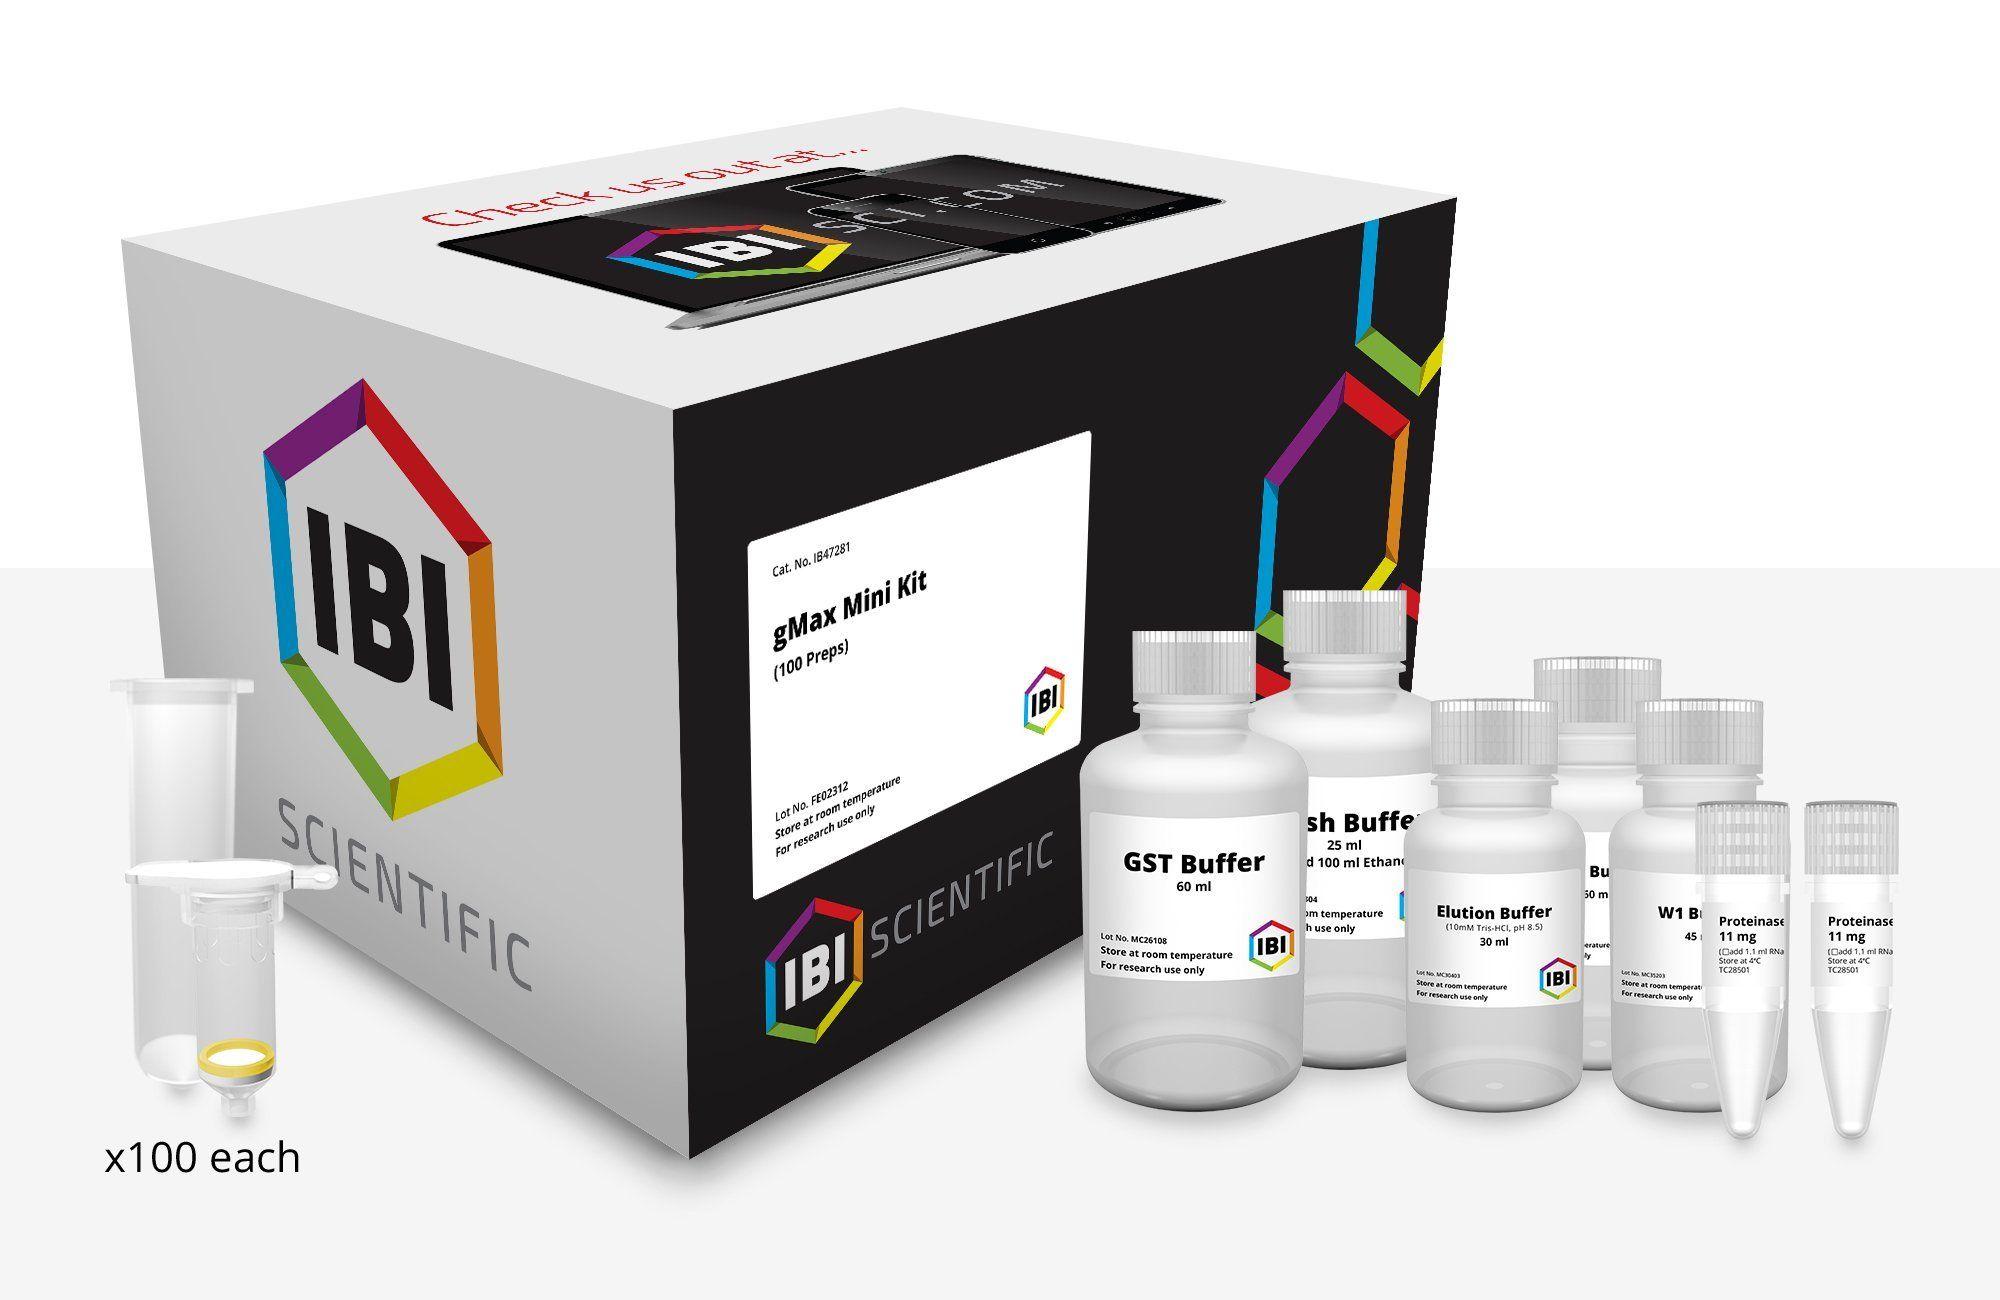 Gmax Logo - gMAX Mini Genomic DNA Kit – 100 Prep – IBI Scientific